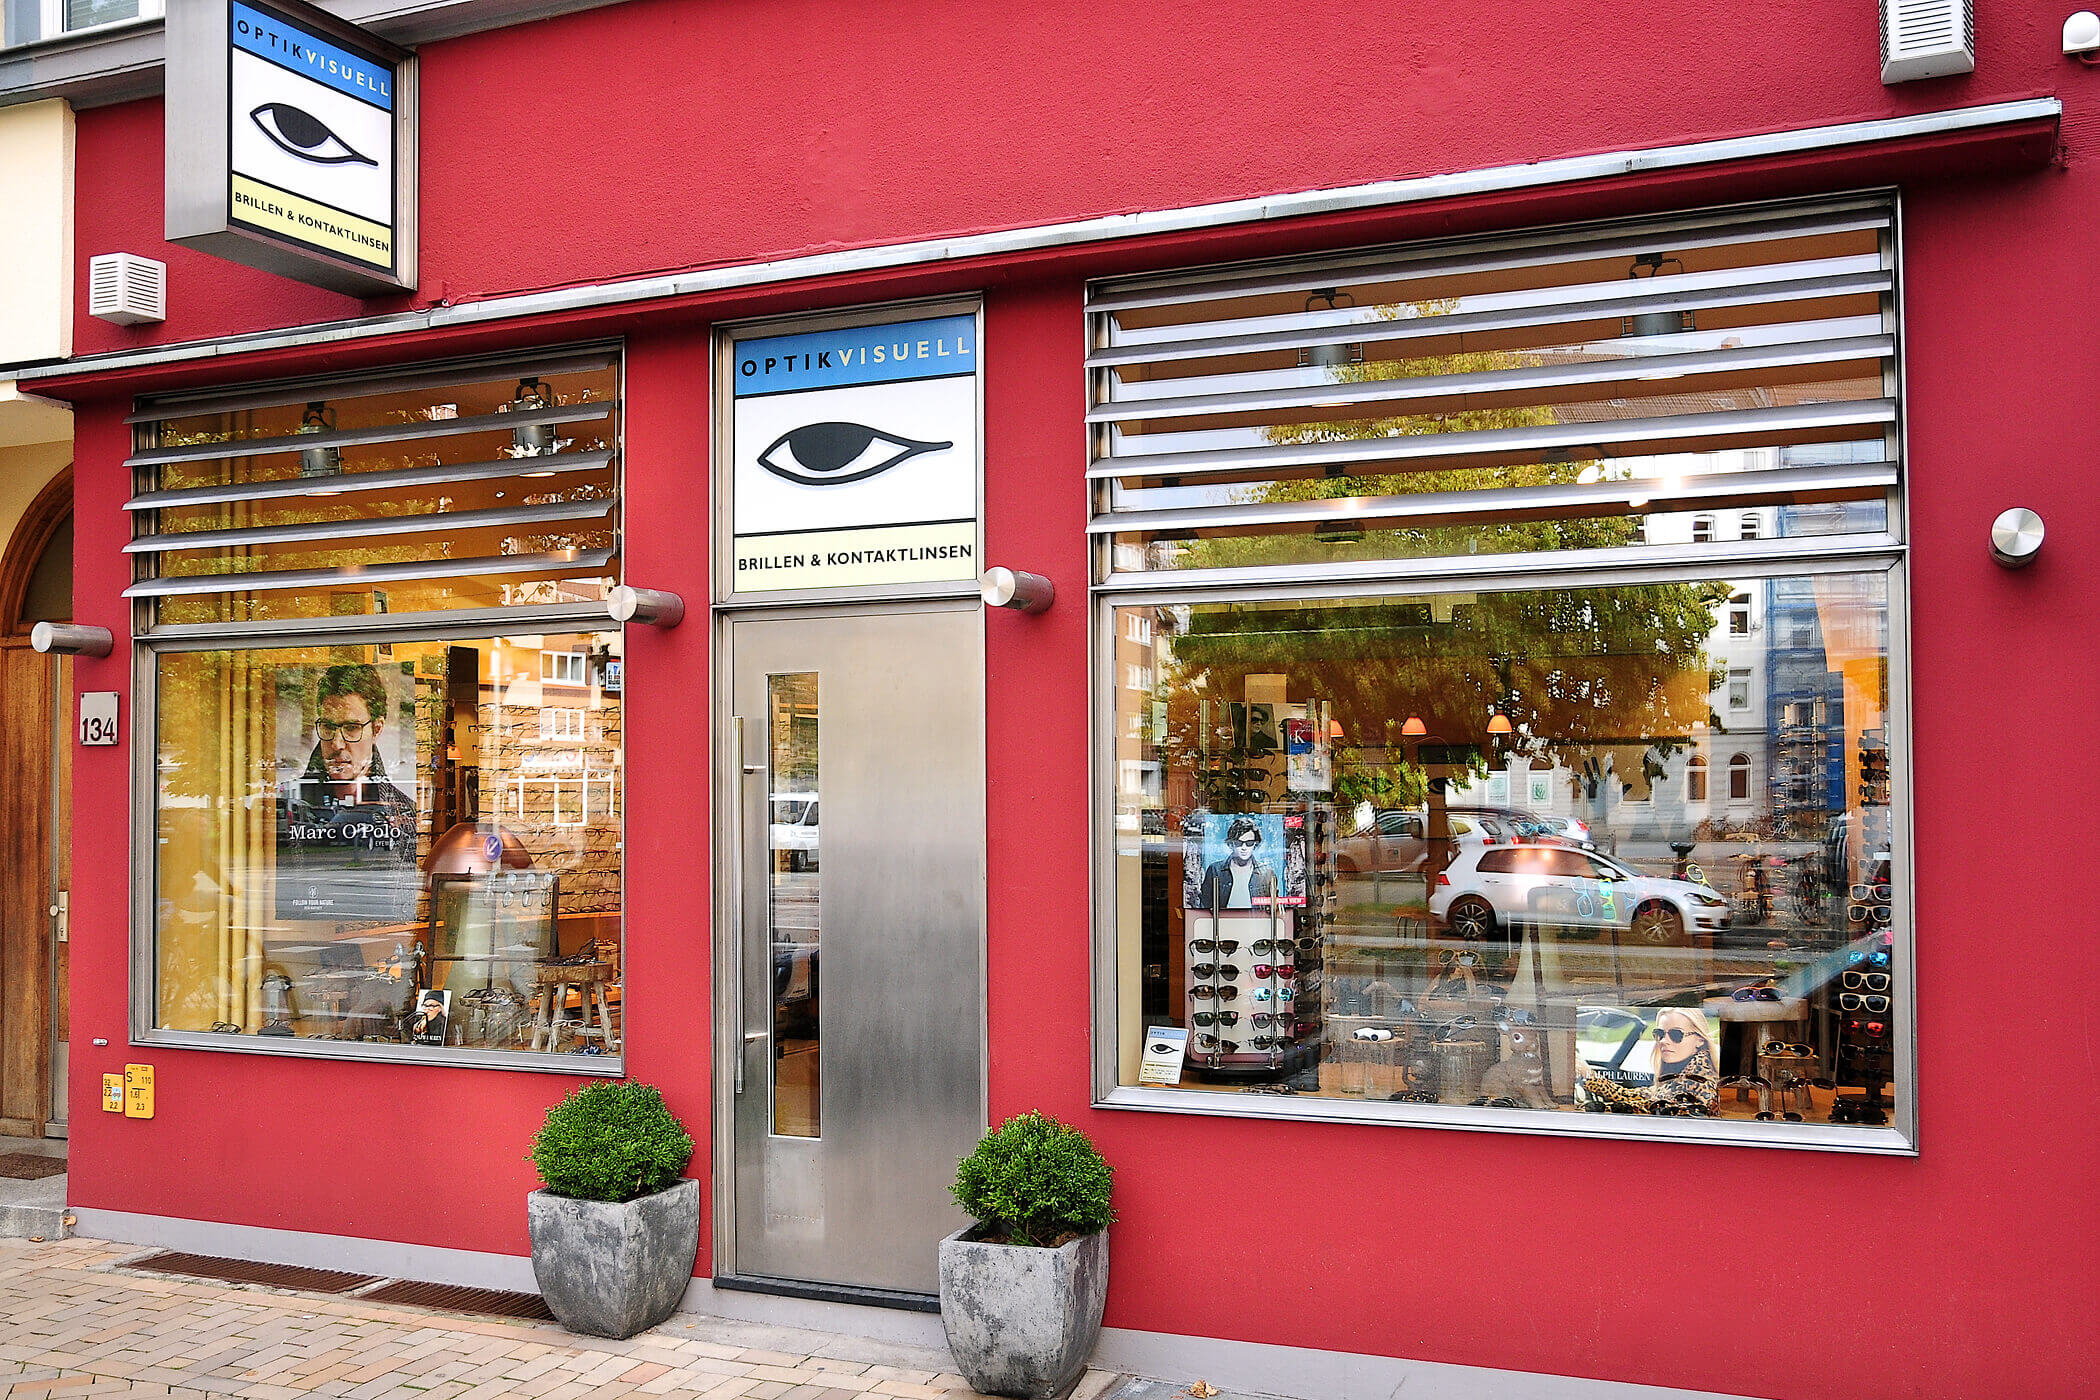 Optik Visuell GmbH | Brillen & Kontaktlinsen, Holtenauer Str. 134 in Kiel